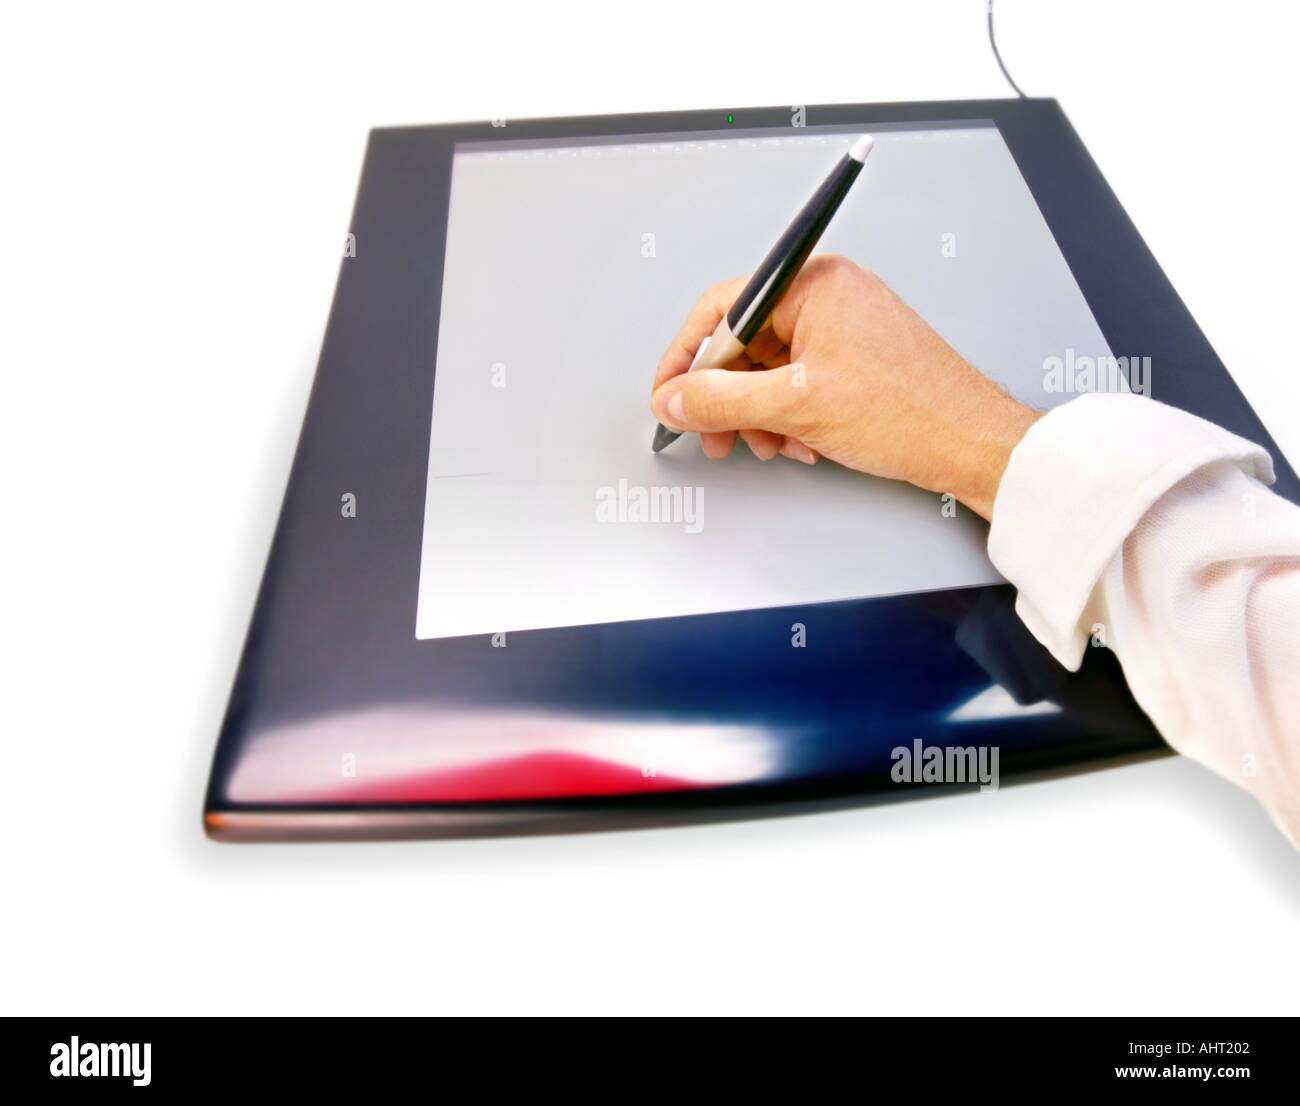 Schreiben mit einem Stift auf einem Grafiktablett zeichnen die Hand  Stockfotografie - Alamy